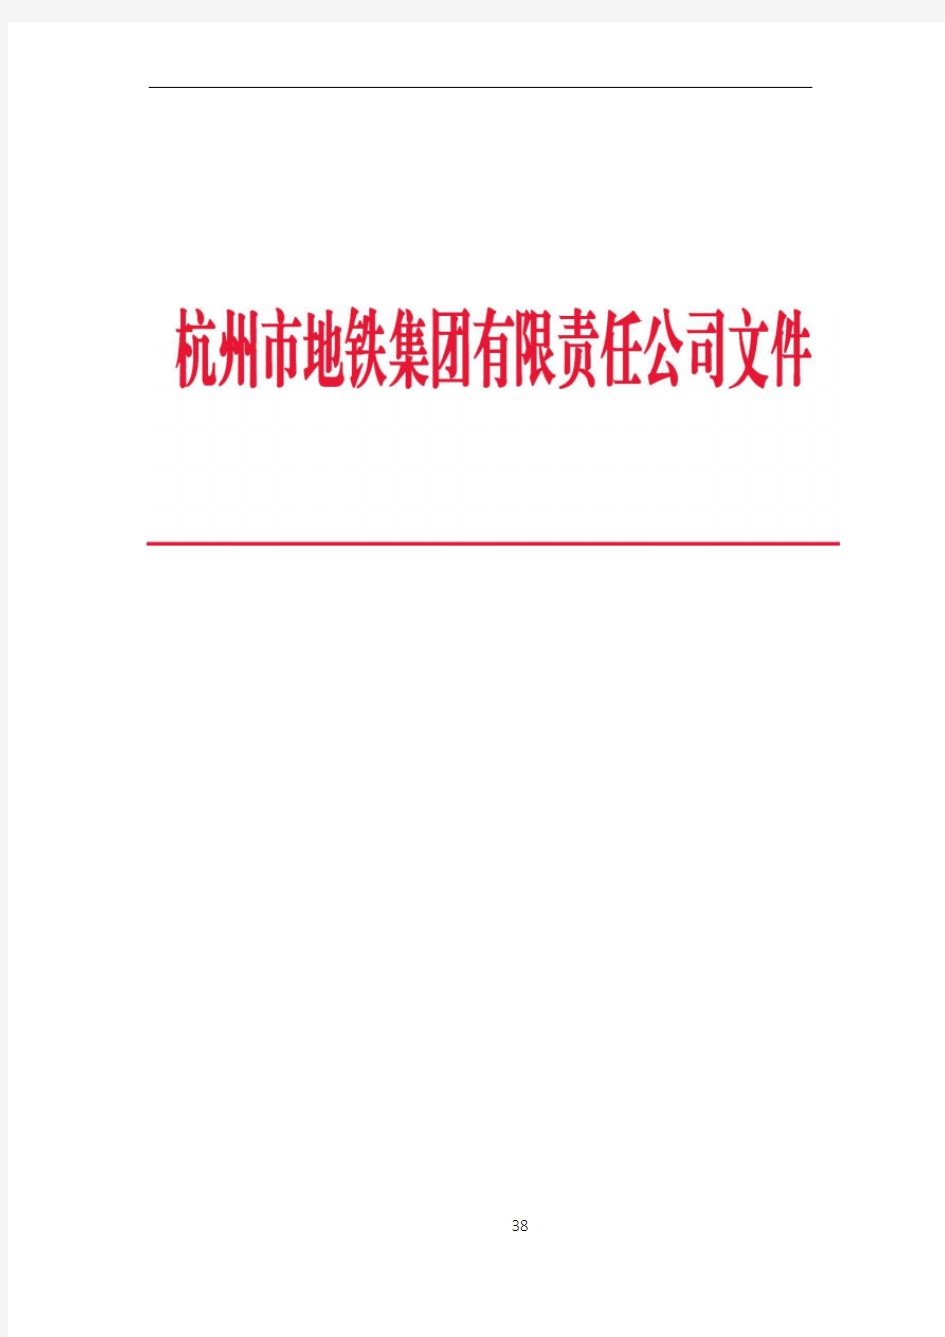 杭州地铁工程建设关键节点条件验收管理办法